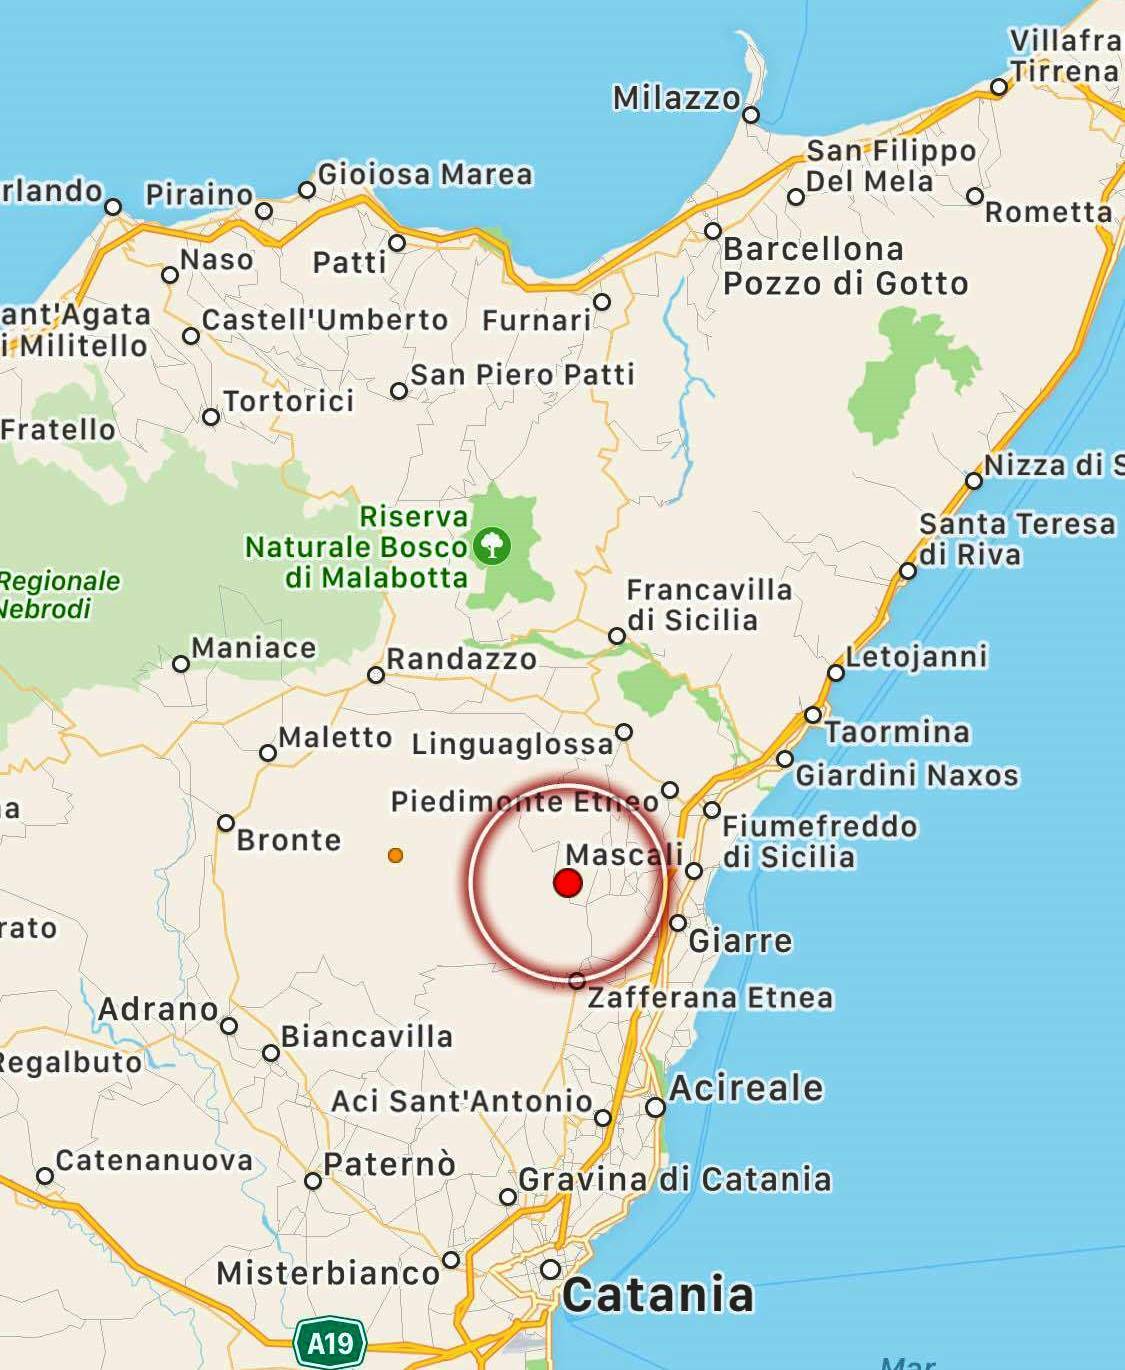 Terremoto, scossa sull’Etna: paura tra Giarre e Catania [DATI e MAPPPE] - Stretto web